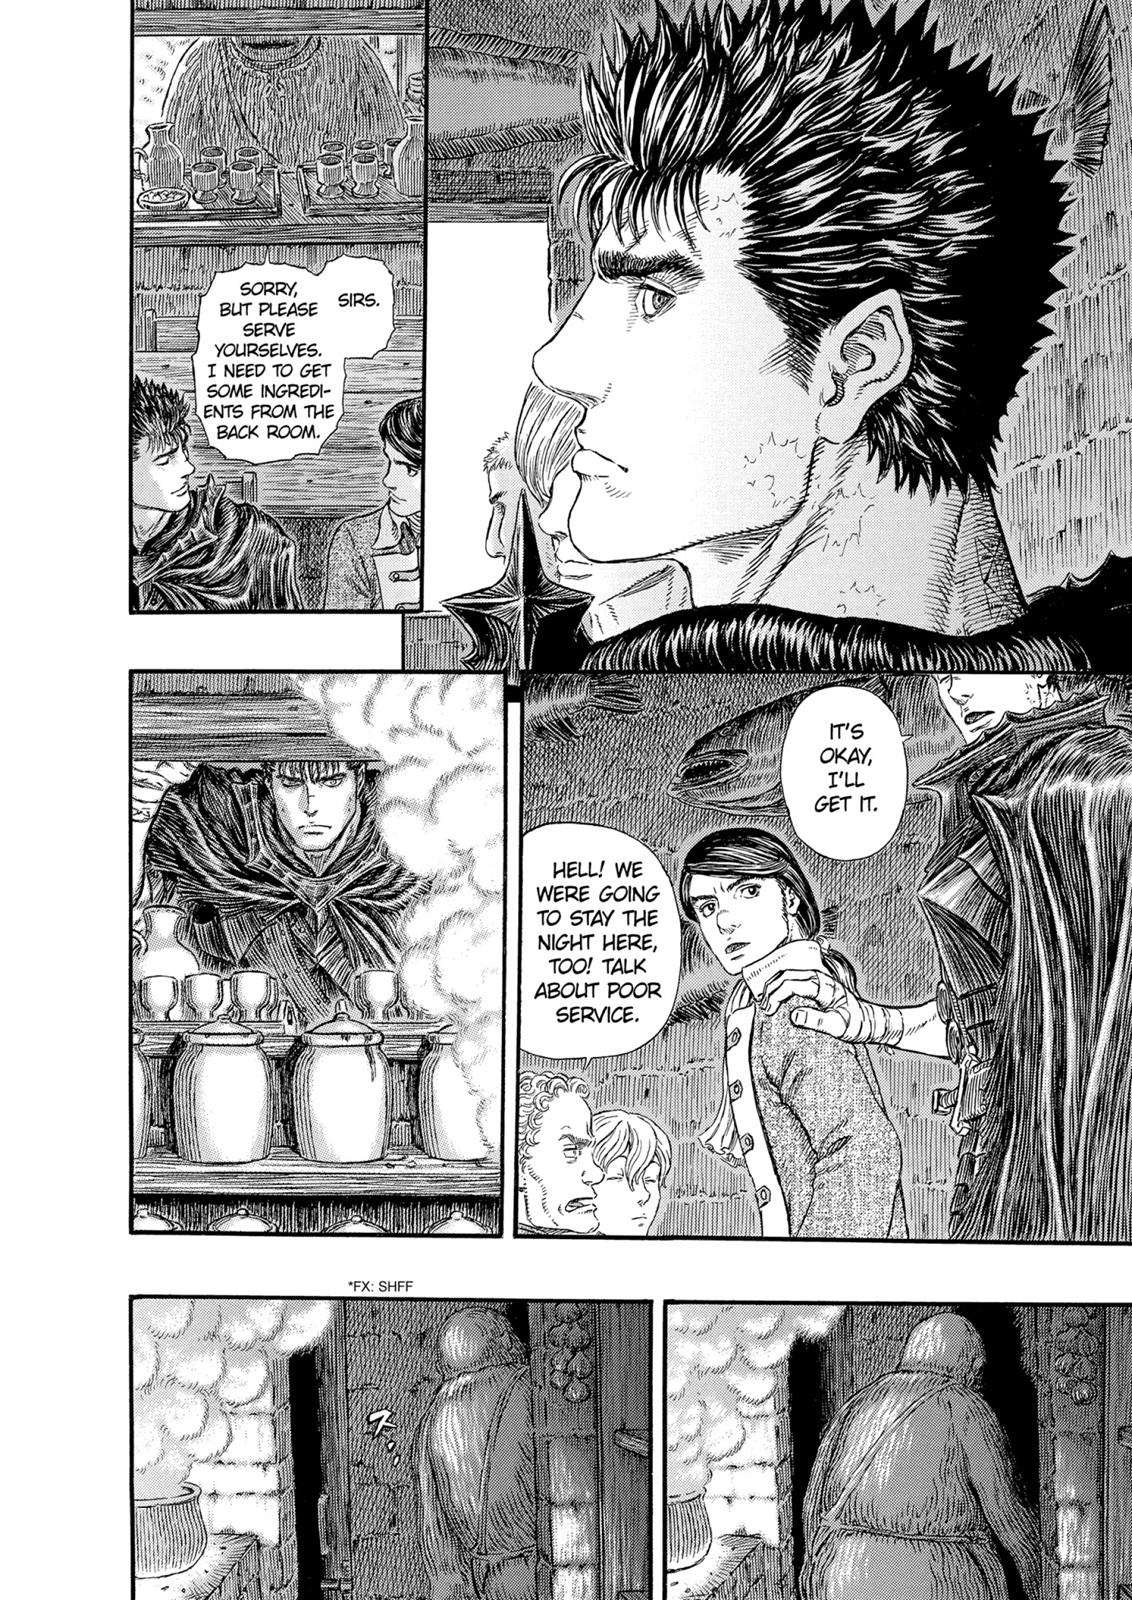 Berserk Manga Chapter 312 image 13